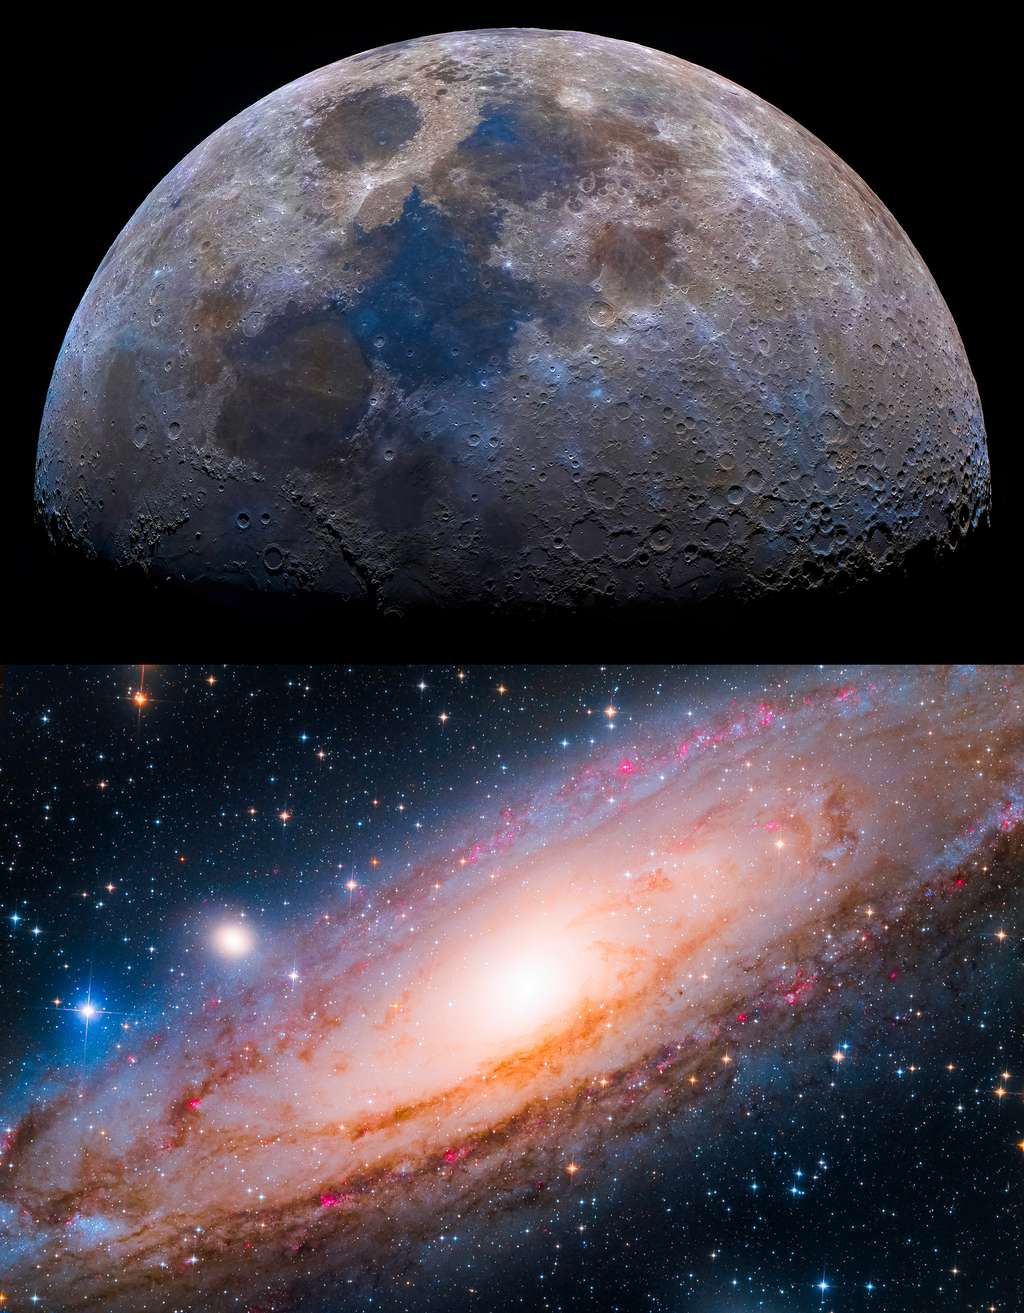 Dans la rubrique « jeune photographe », quatre images ont été primées. Il y a celle de Peter Szabo et sa mosaïque de la Lune constituée de 34 photographies et celle de Yang Hanwen et de Zhou Zezhen qui ont photographié la galaxie d’Andromède (M31). 